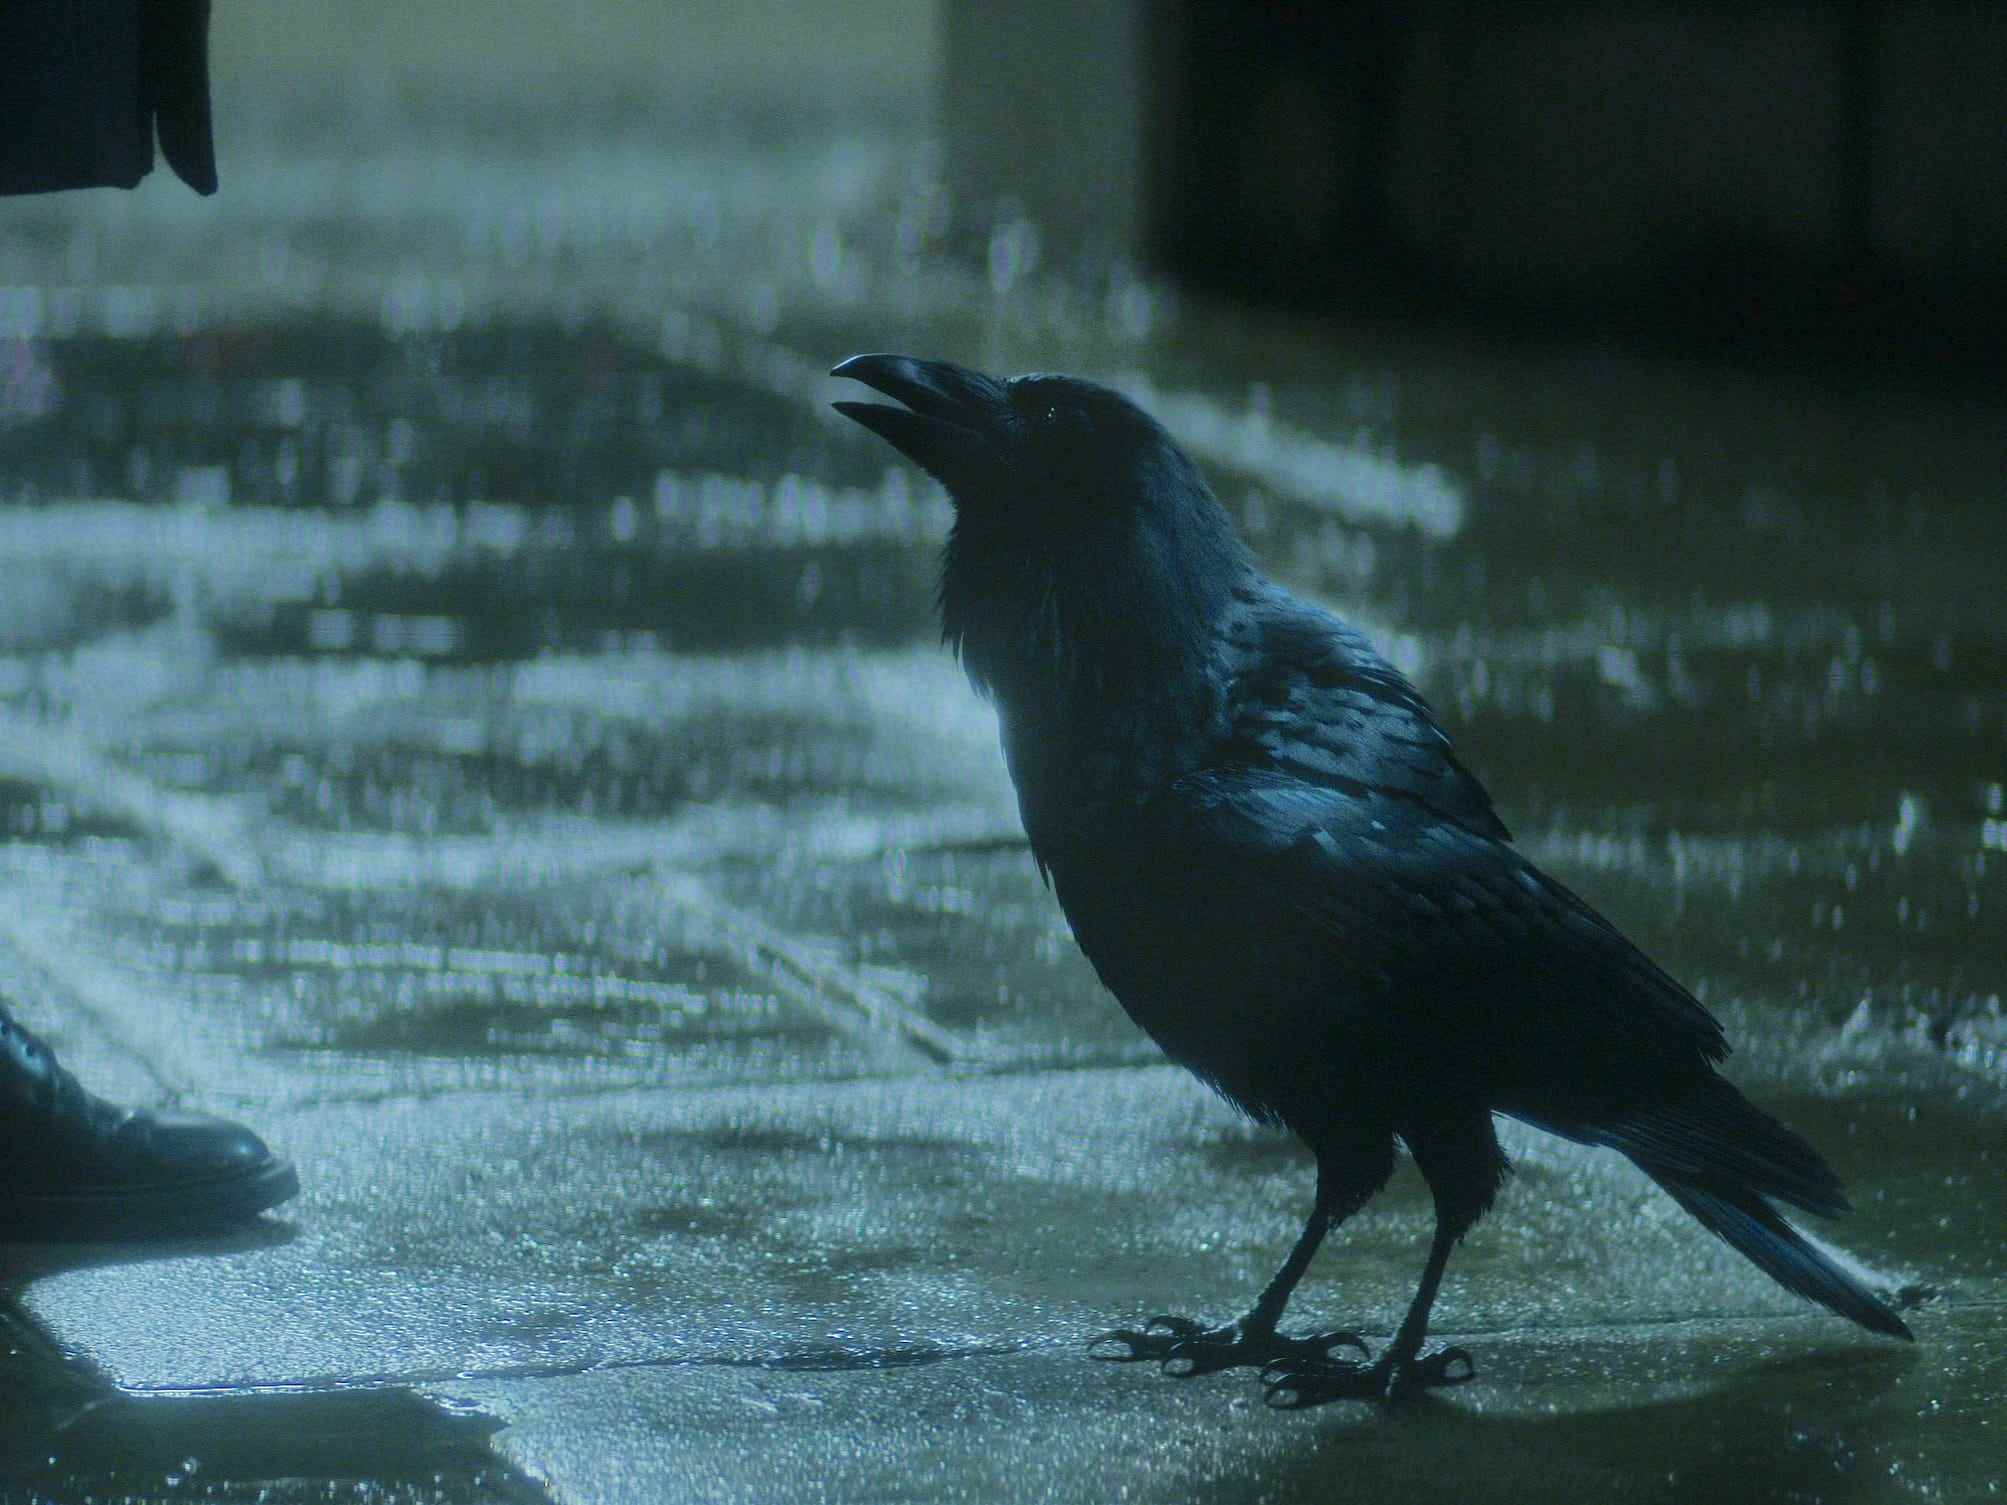 matthew der rabe, ein kleiner, völlig schwarzer vogel, der zu einem menschen aufblickt, der auf einer dunklen, regnerischen straße steht